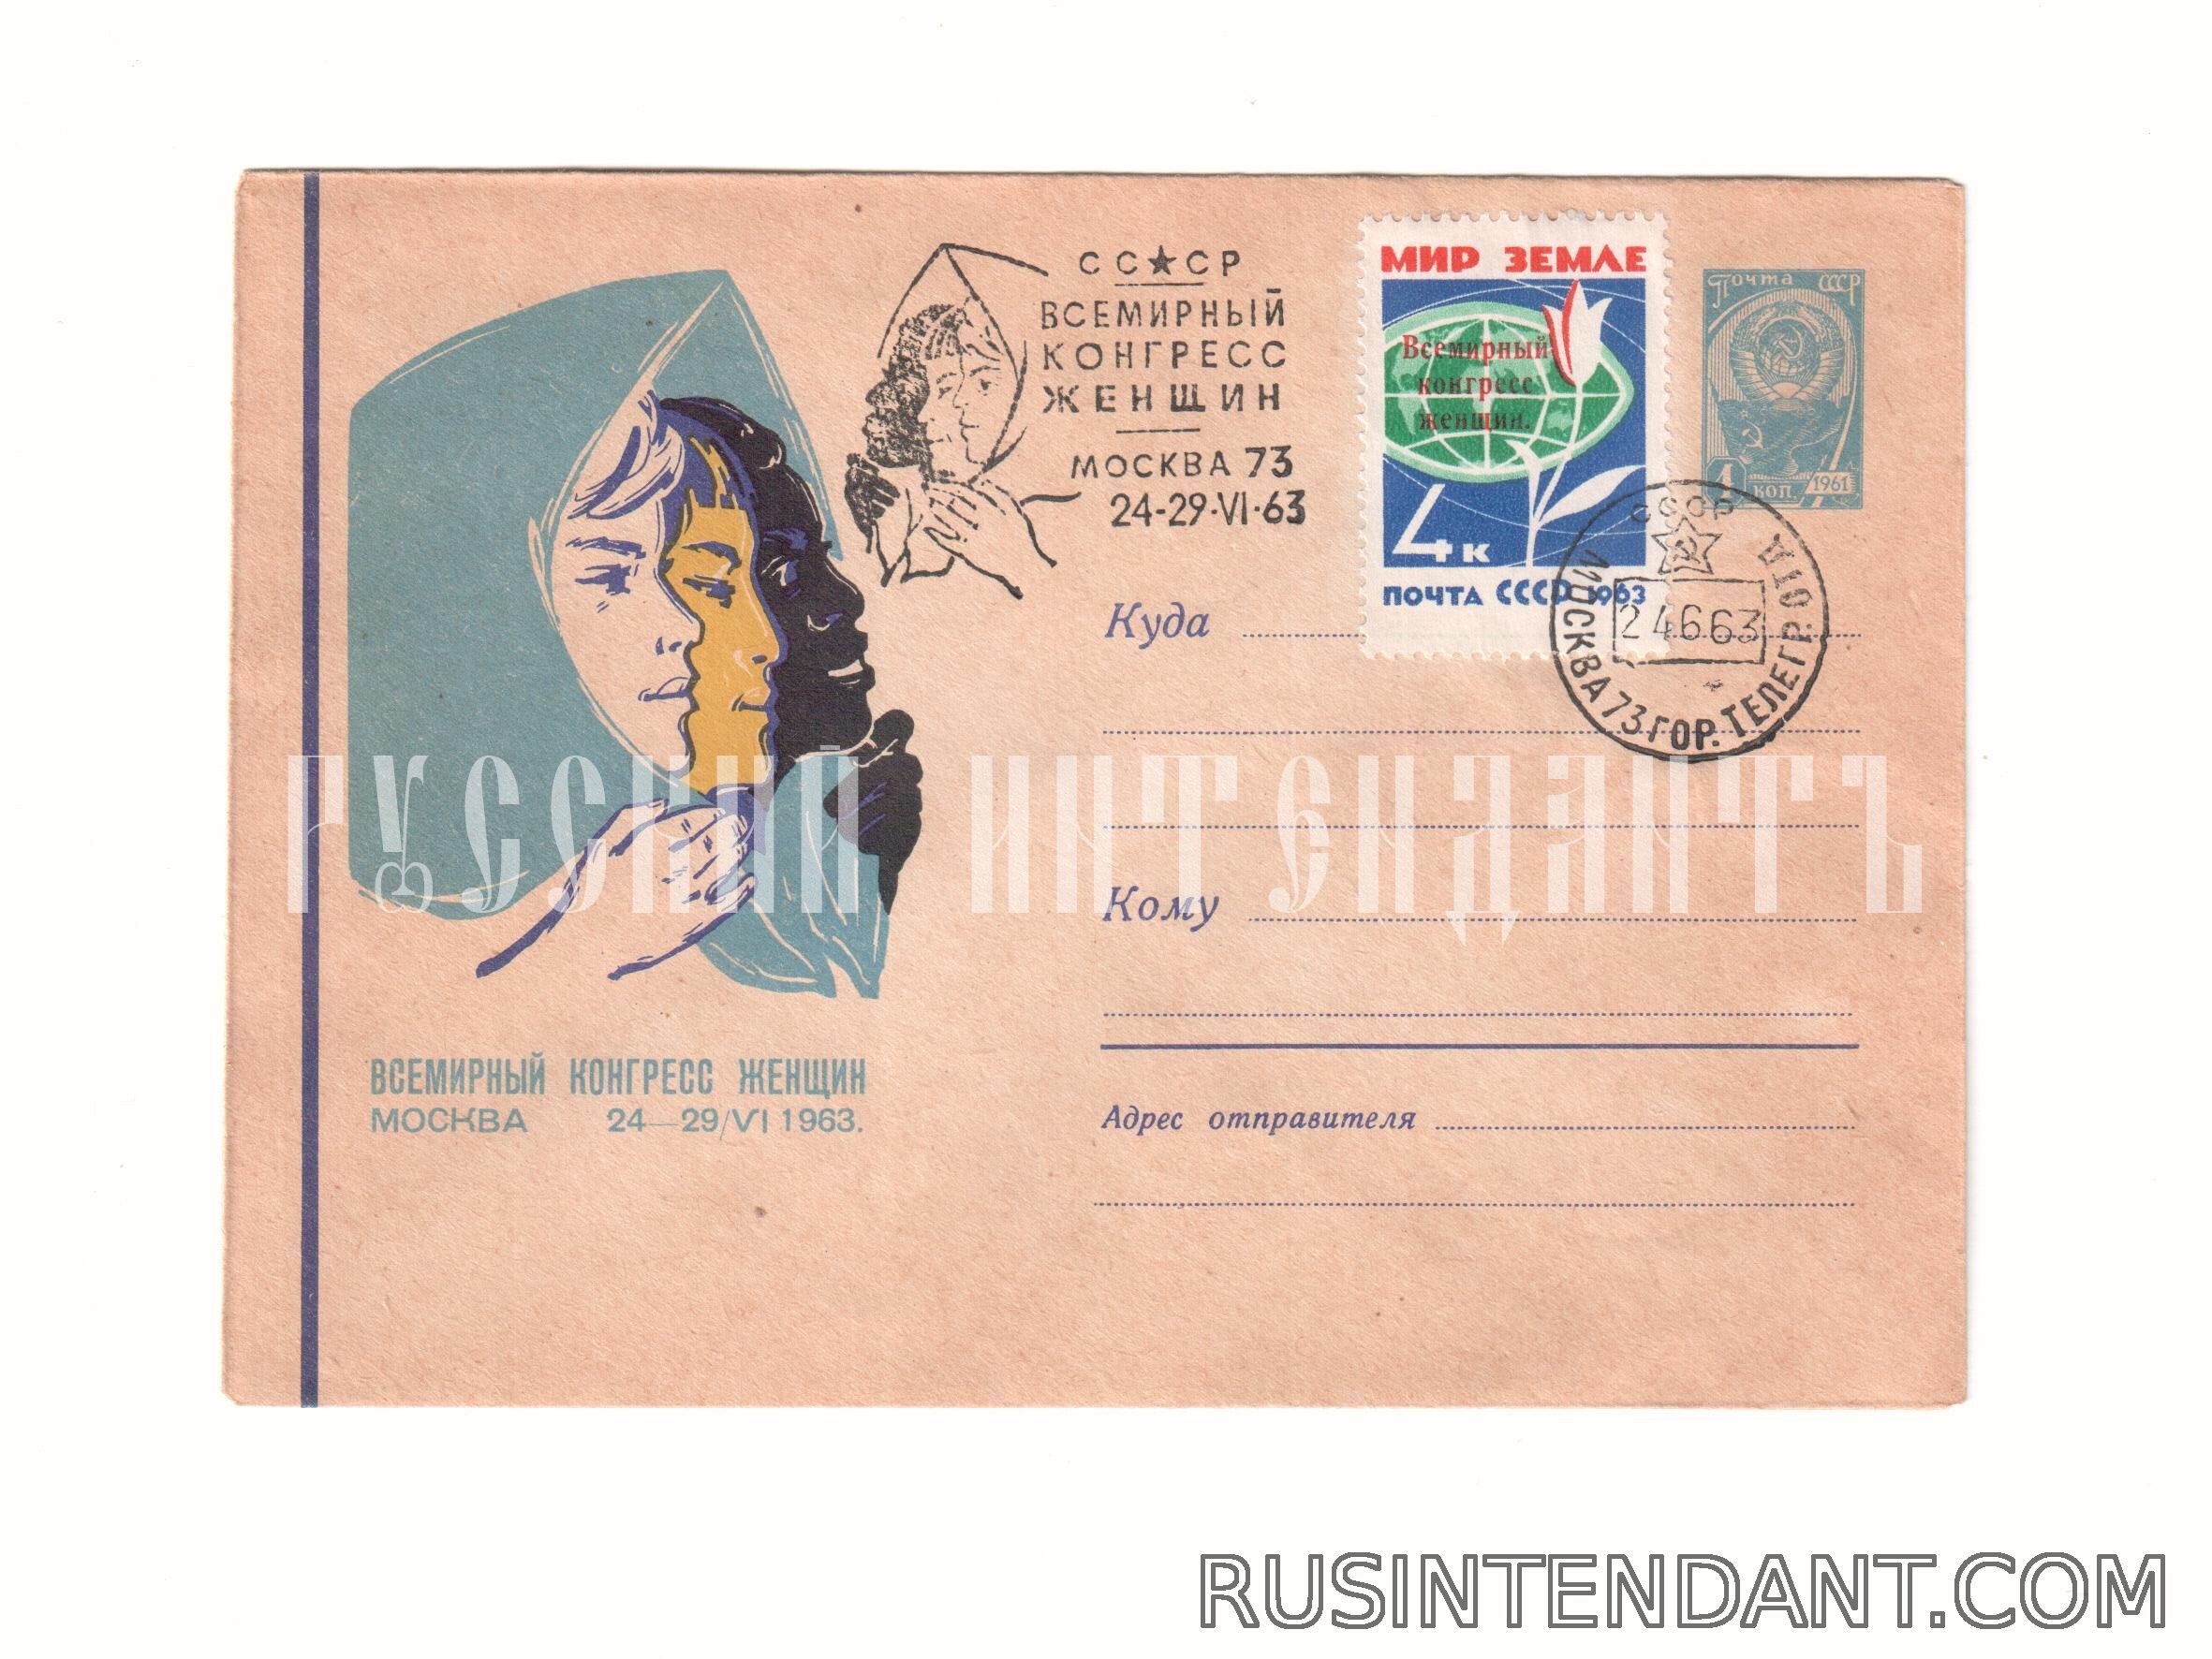 Фото 1: Почтовое спецгашение «Всемирный конгресс женщин в Москве» 